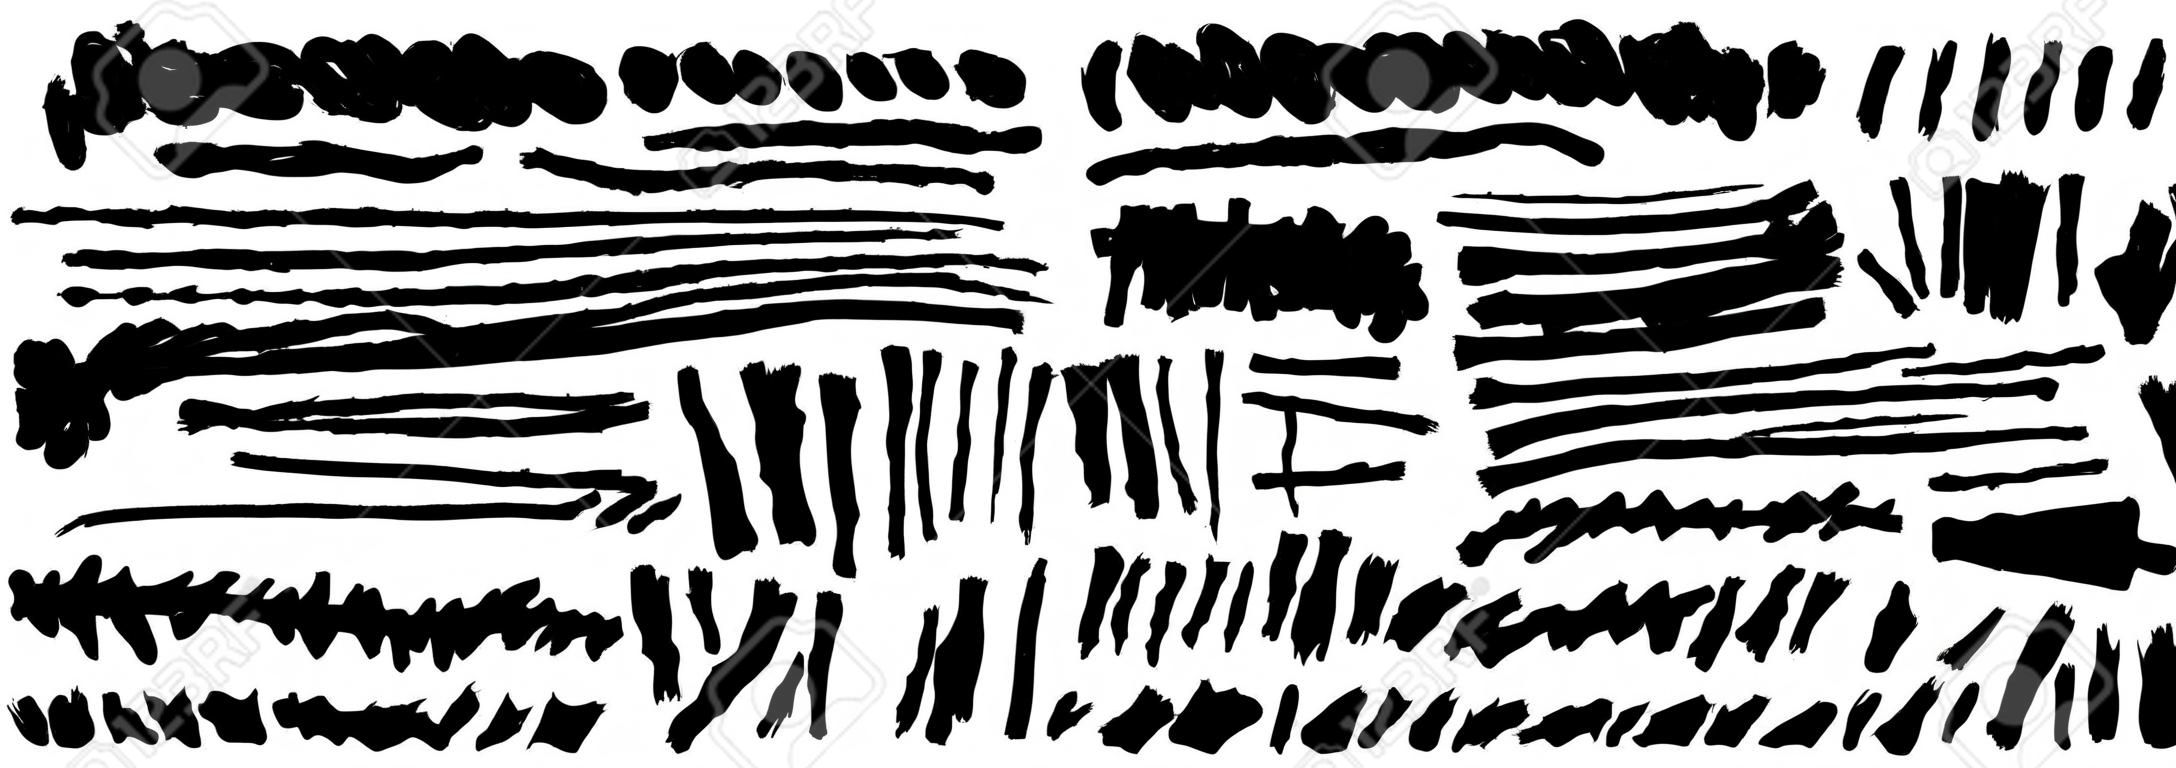 手のセットは、黒いペンキ、インクブラシストローク、ブラシ、線を描きます。汚れた芸術的なグランジデザイン要素。ベクトル